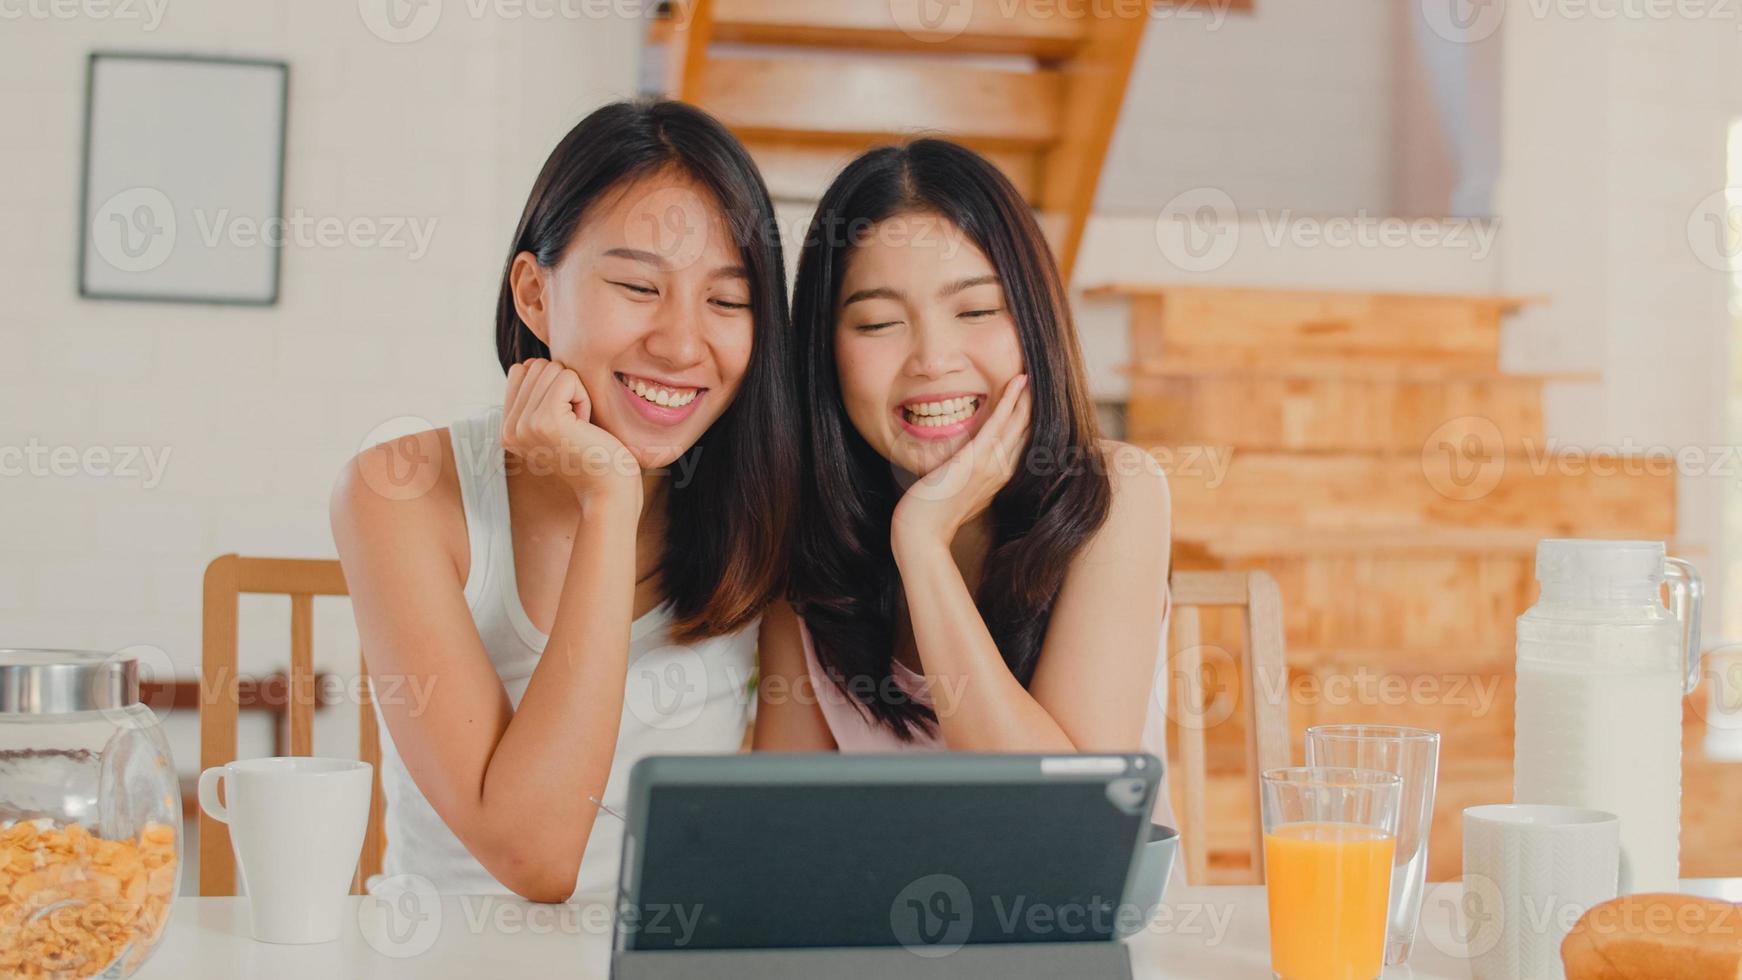 Lesbiche asiatiche influencer lgbtq donne coppia vlog a casa, giovani ragazze amante asiatiche felici usando tablet registrare video vlog nei social media mentre fanno colazione in cucina a casa al mattino concetto. foto